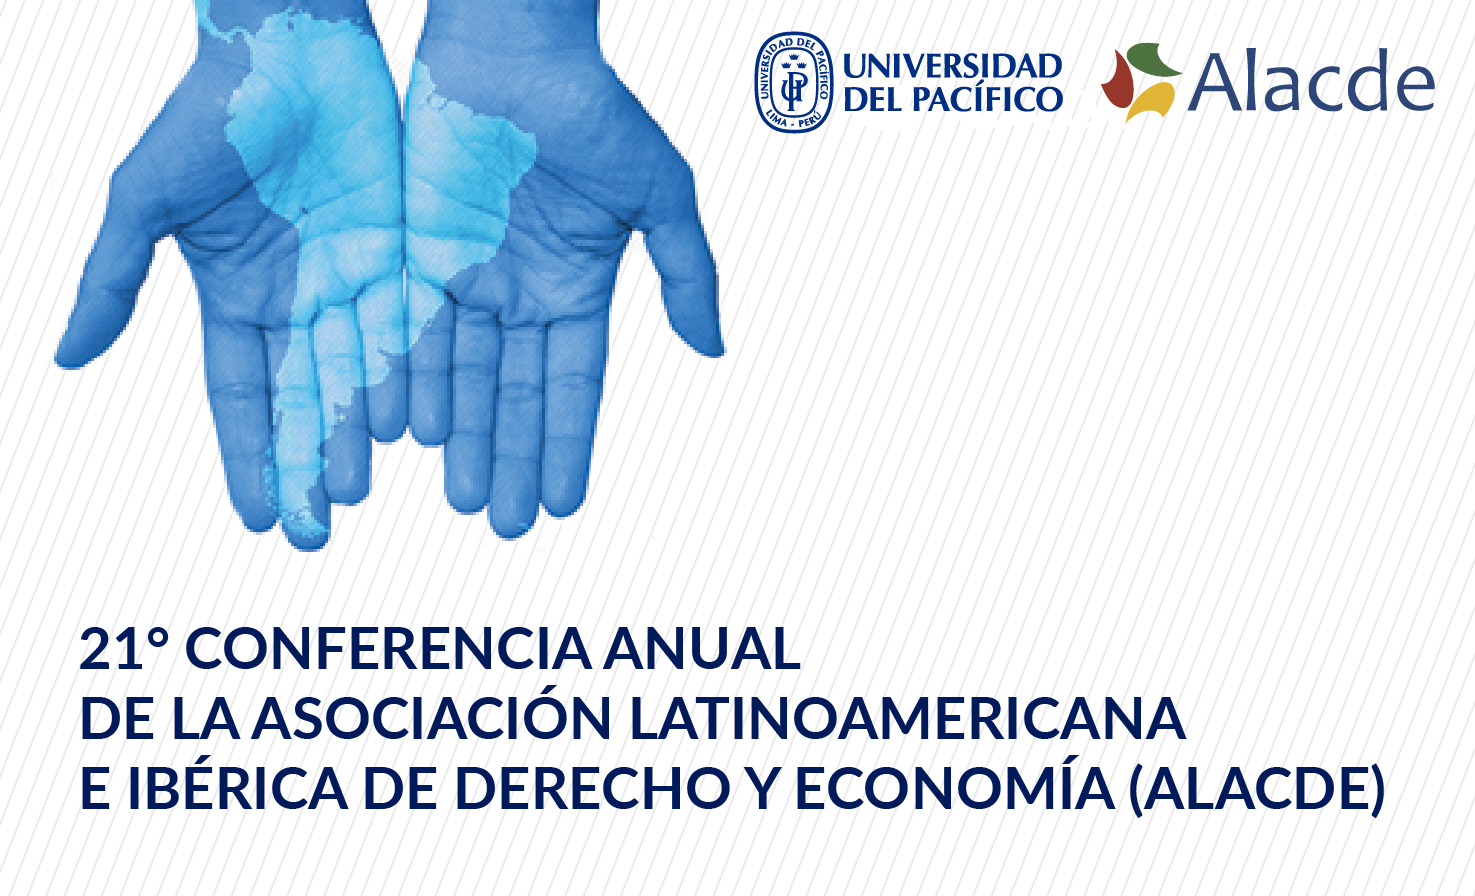 21° Conferencia anual de la Asociación Latinoamericana e Ibérica de Derecho y Economía (ALACDE)